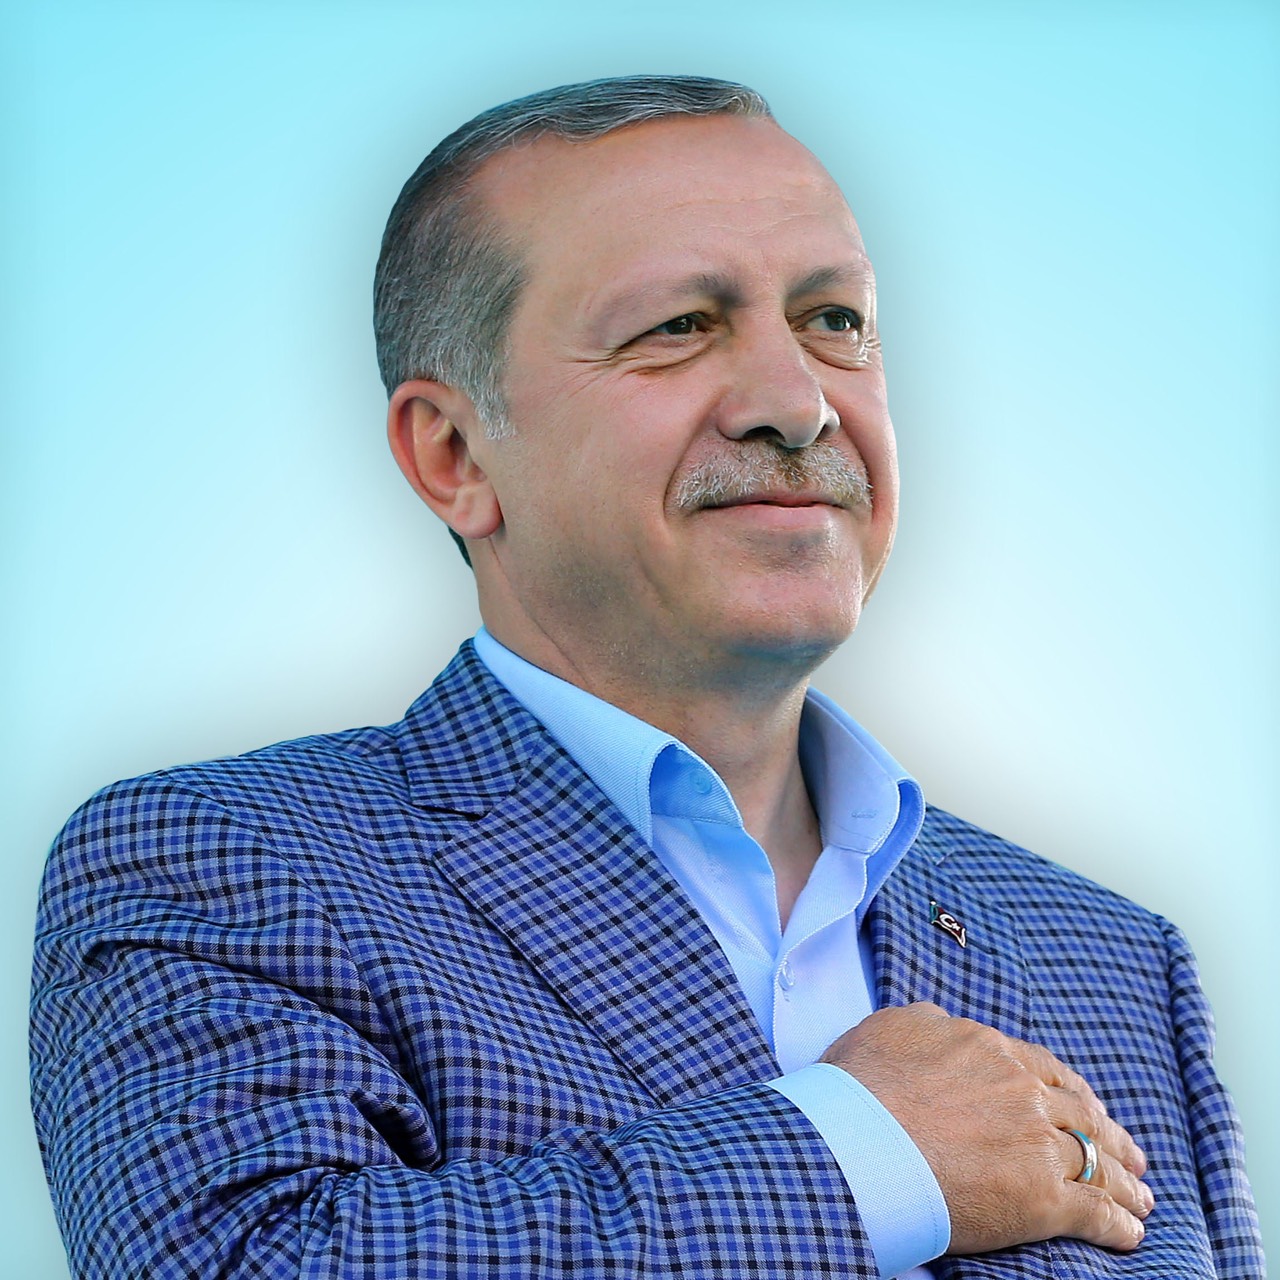 Թուրքիայի նախագահ Էրդողանն ապրիլի 24-ին կլինի Ադրբեջանում